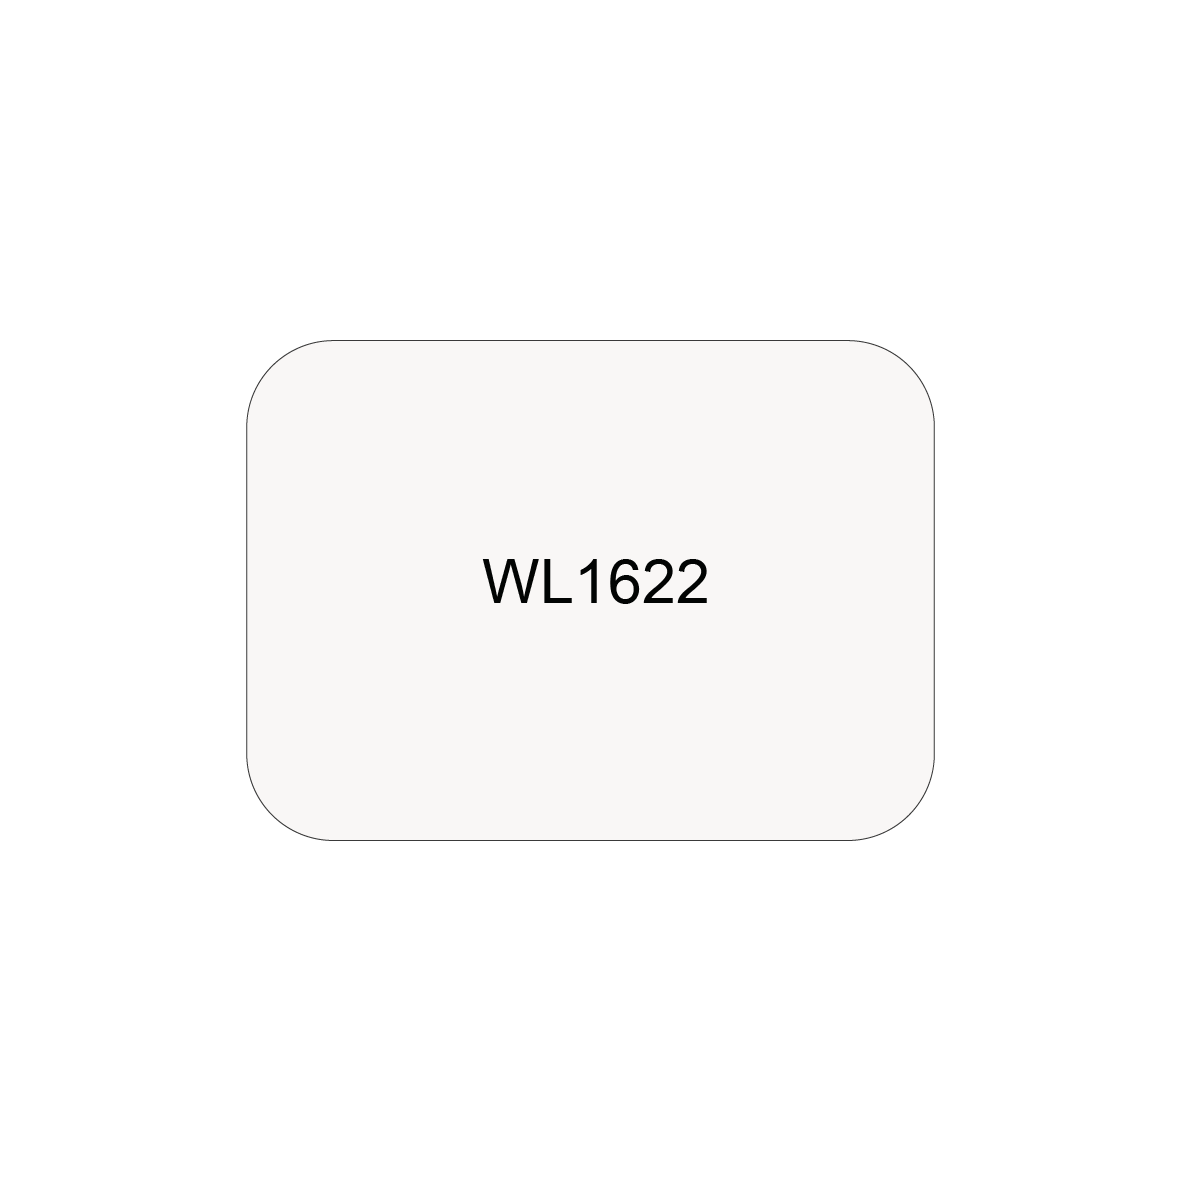 WL1622 - ASTAR SELF-ADHESIVE LABEL